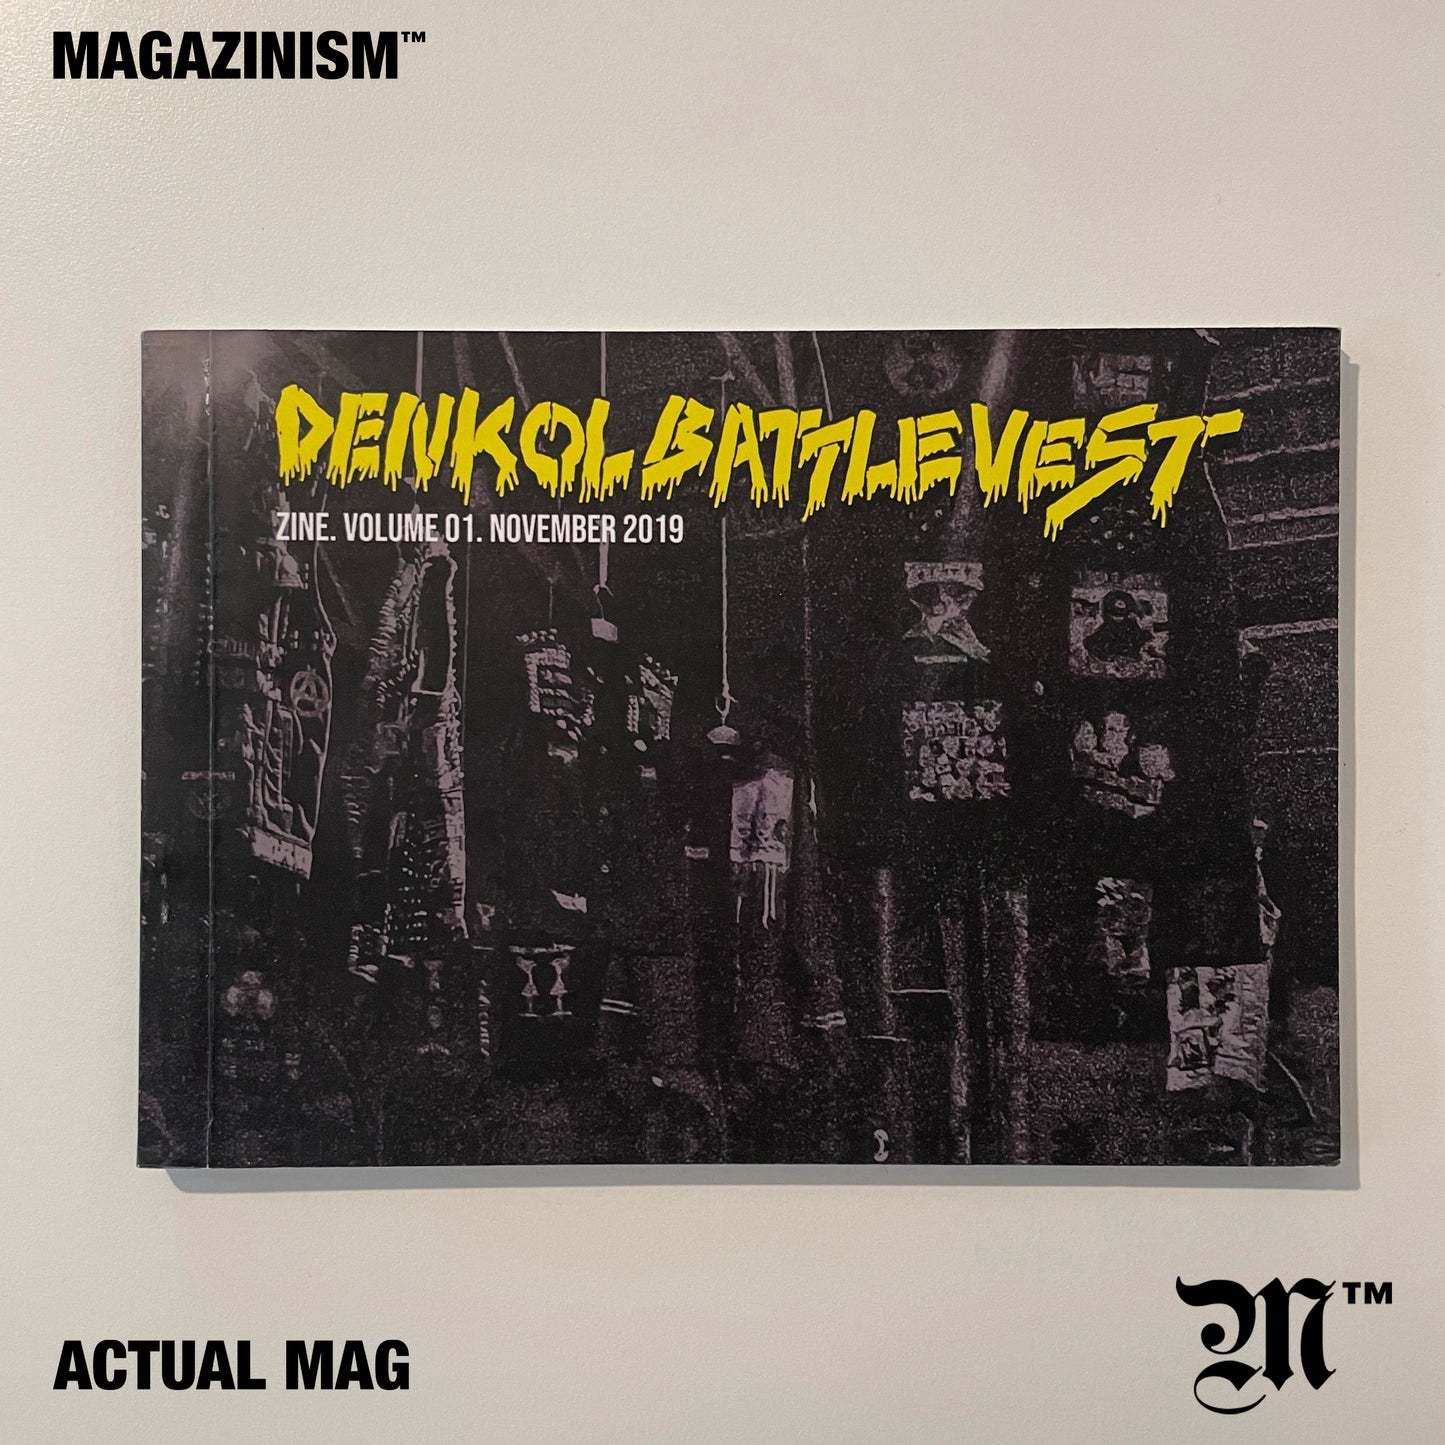 Denkol Battle vest Vol.1 2019 - Indonesia